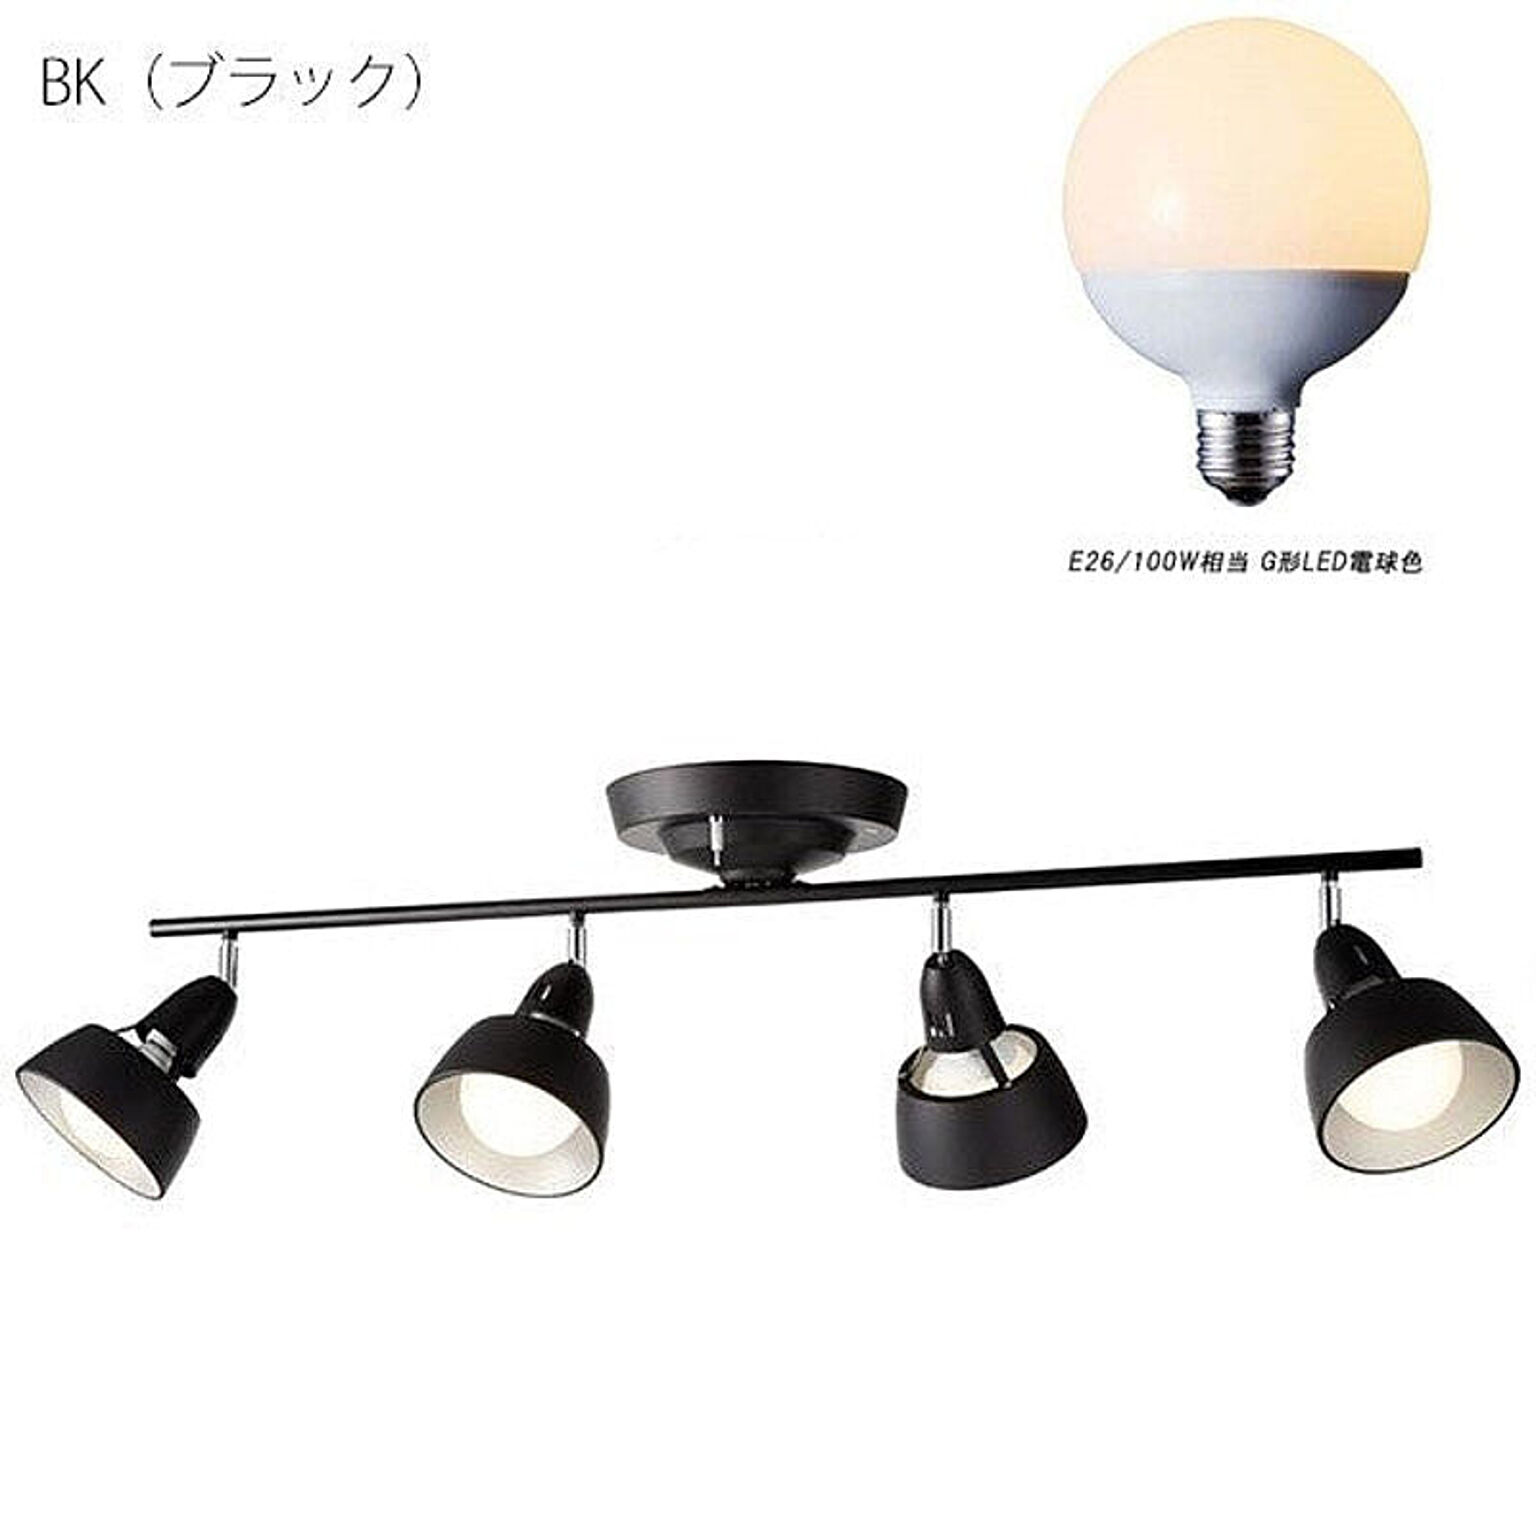 シーリングランプ 4灯 カラー5色 リモコン付き スポットライト 照明 寝室 和室 洋室 北欧 リビング 天井照明 ベーシック シンプル モダン HARMONY GRANDE インテリア 照明